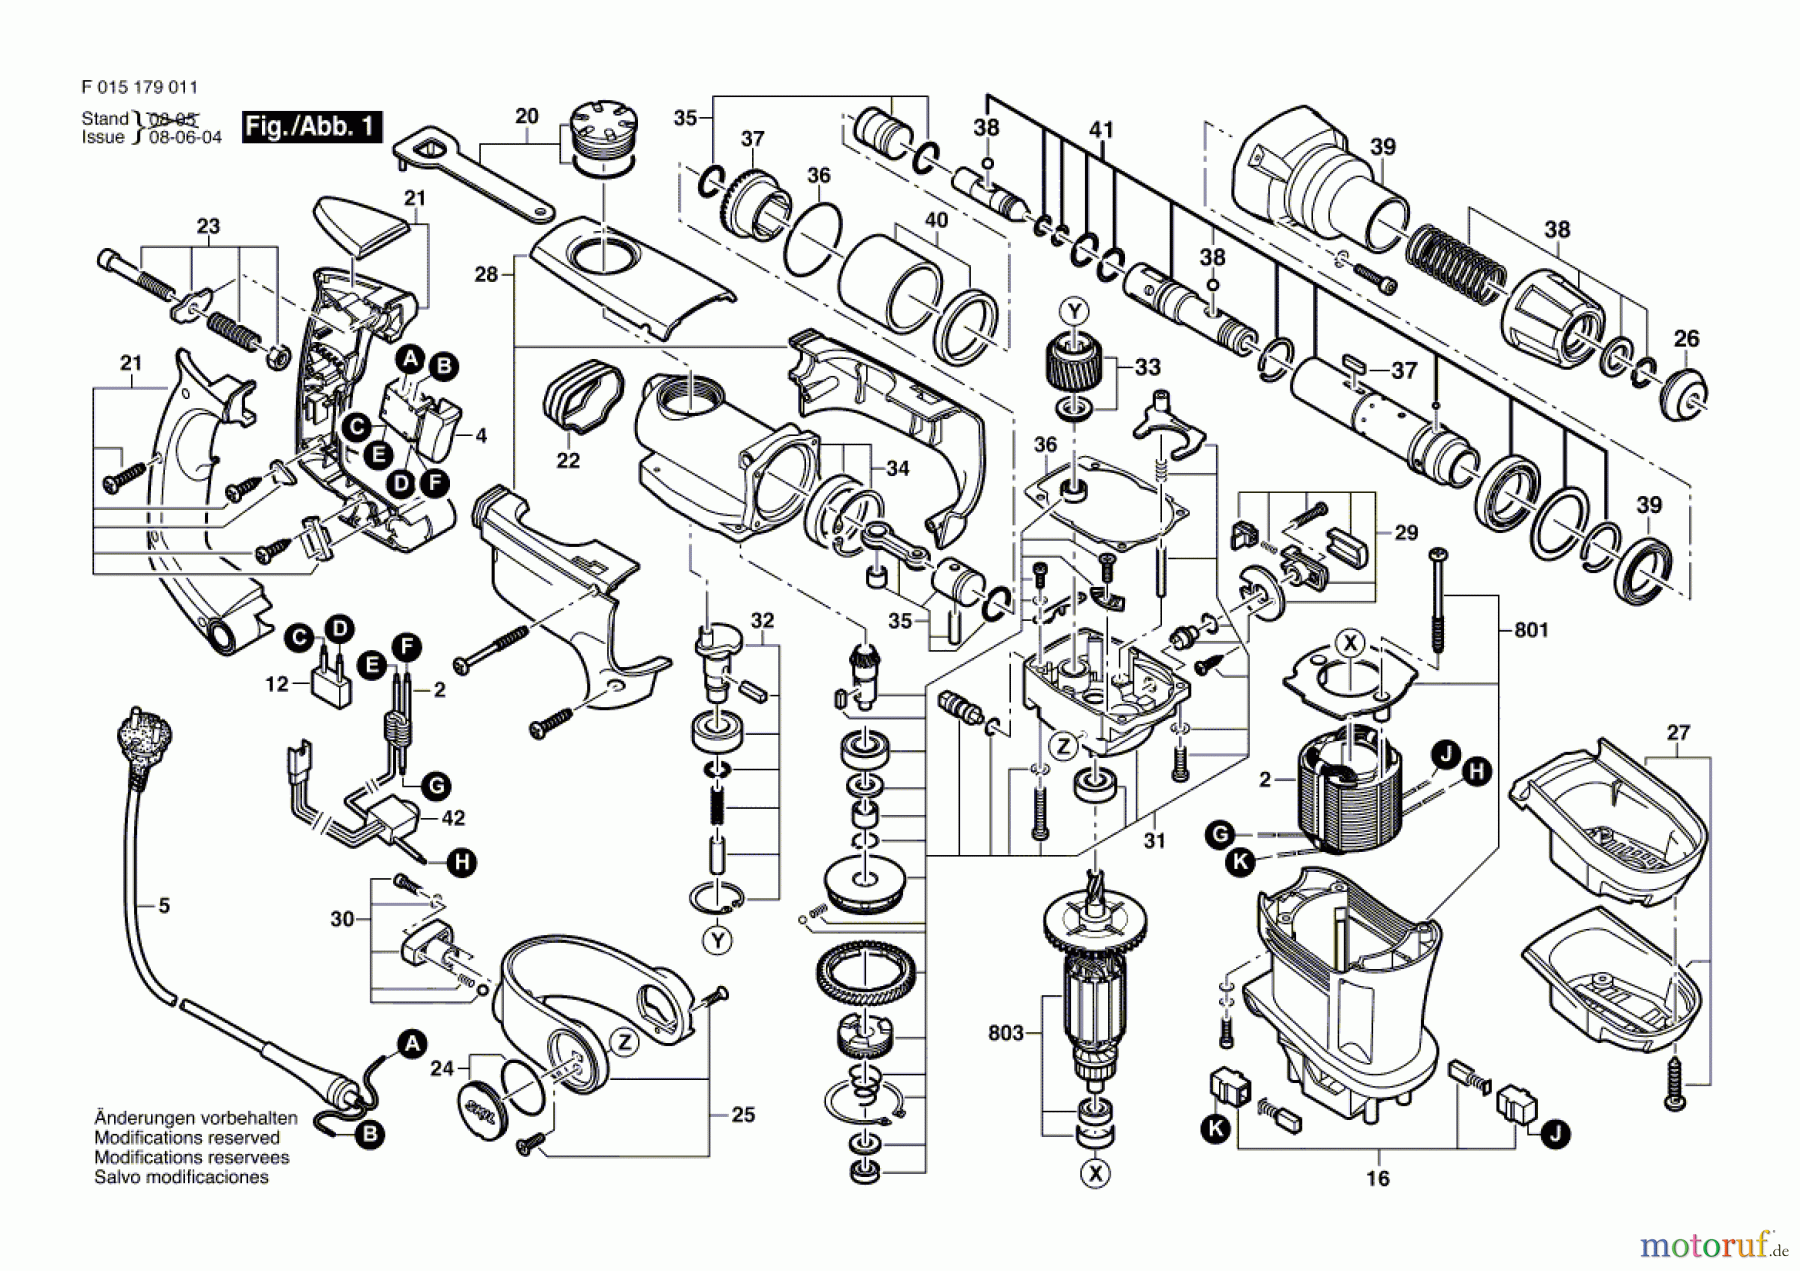  Bosch Werkzeug Hammerbohrmaschine 1790 Seite 1